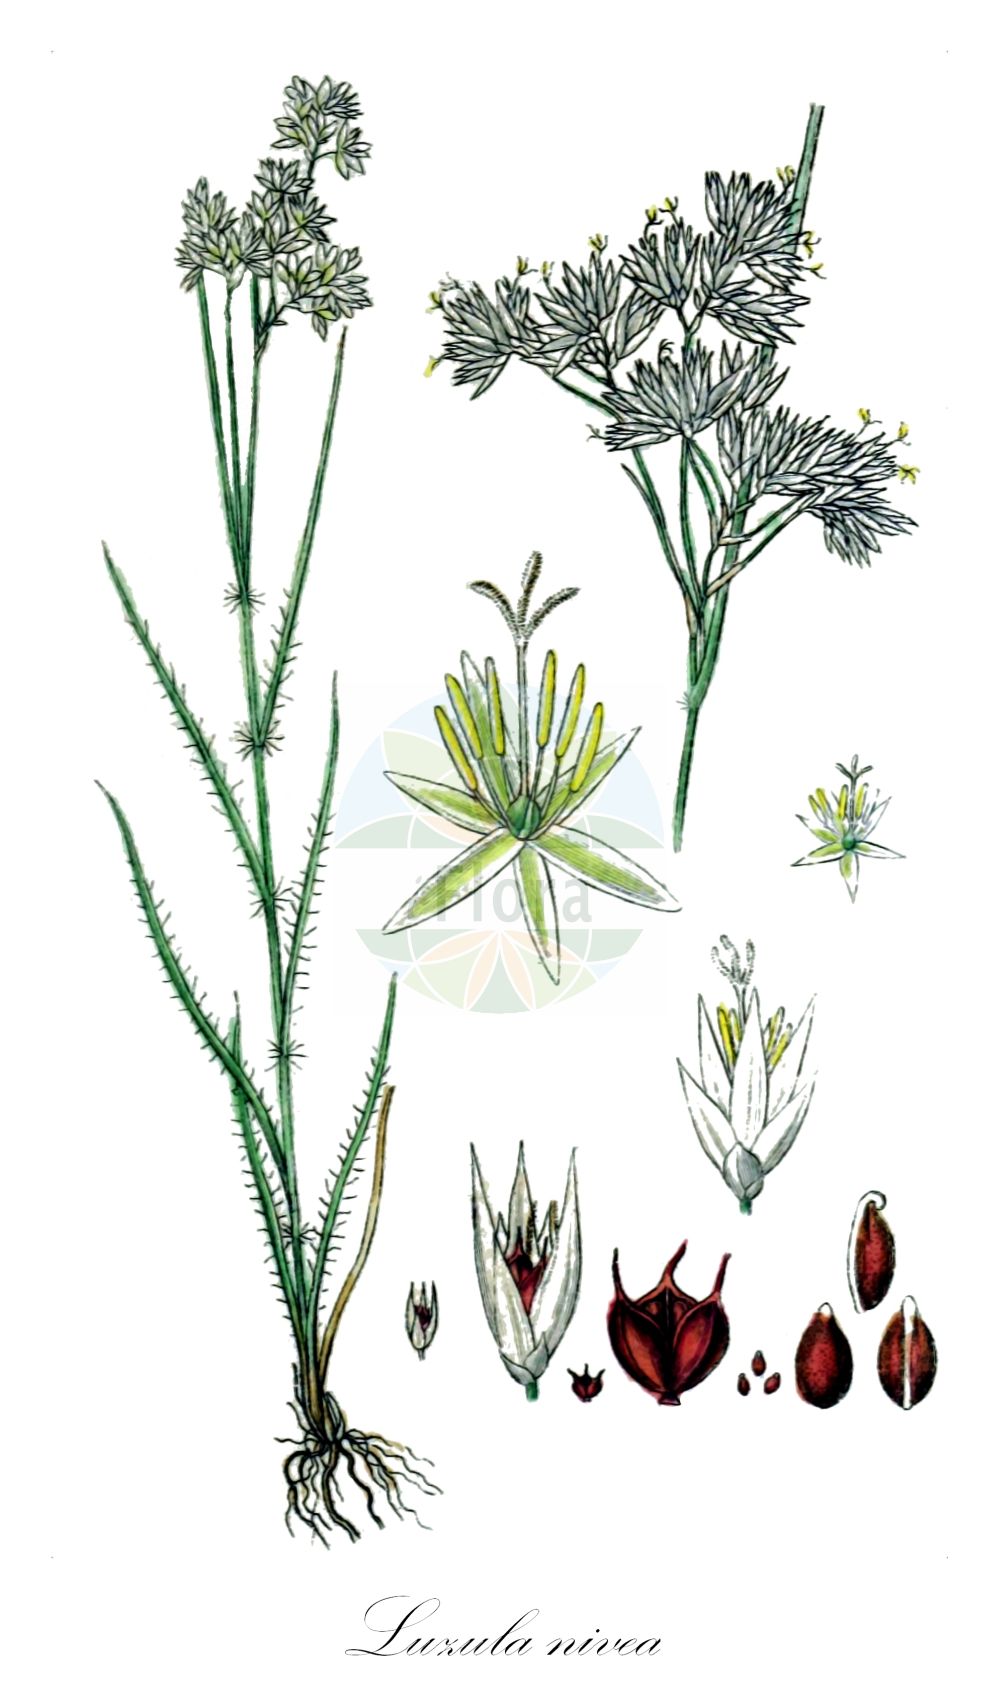 Historische Abbildung von Luzula nivea (Schnee-Hainsimse - Snow-white Wood-Rush). Das Bild zeigt Blatt, Bluete, Frucht und Same. ---- Historical Drawing of Luzula nivea (Schnee-Hainsimse - Snow-white Wood-Rush). The image is showing leaf, flower, fruit and seed.(Luzula nivea,Schnee-Hainsimse,Snow-white Wood-Rush,Juncoides nivea,Juncus niveus,Luzula nivea,Luzula nivea var. rubescens,Schnee-Hainsimse,Schneeweisse Hainsimse,Snow-white Wood-Rush,Snowy Woodrush,Lesser Wood-rush,Luzula,Hainsimse,Wood-rush,Juncaceae,Binsengewächse,Rush family,Blatt,Bluete,Frucht,Same,leaf,flower,fruit,seed,Sturm (1796f))